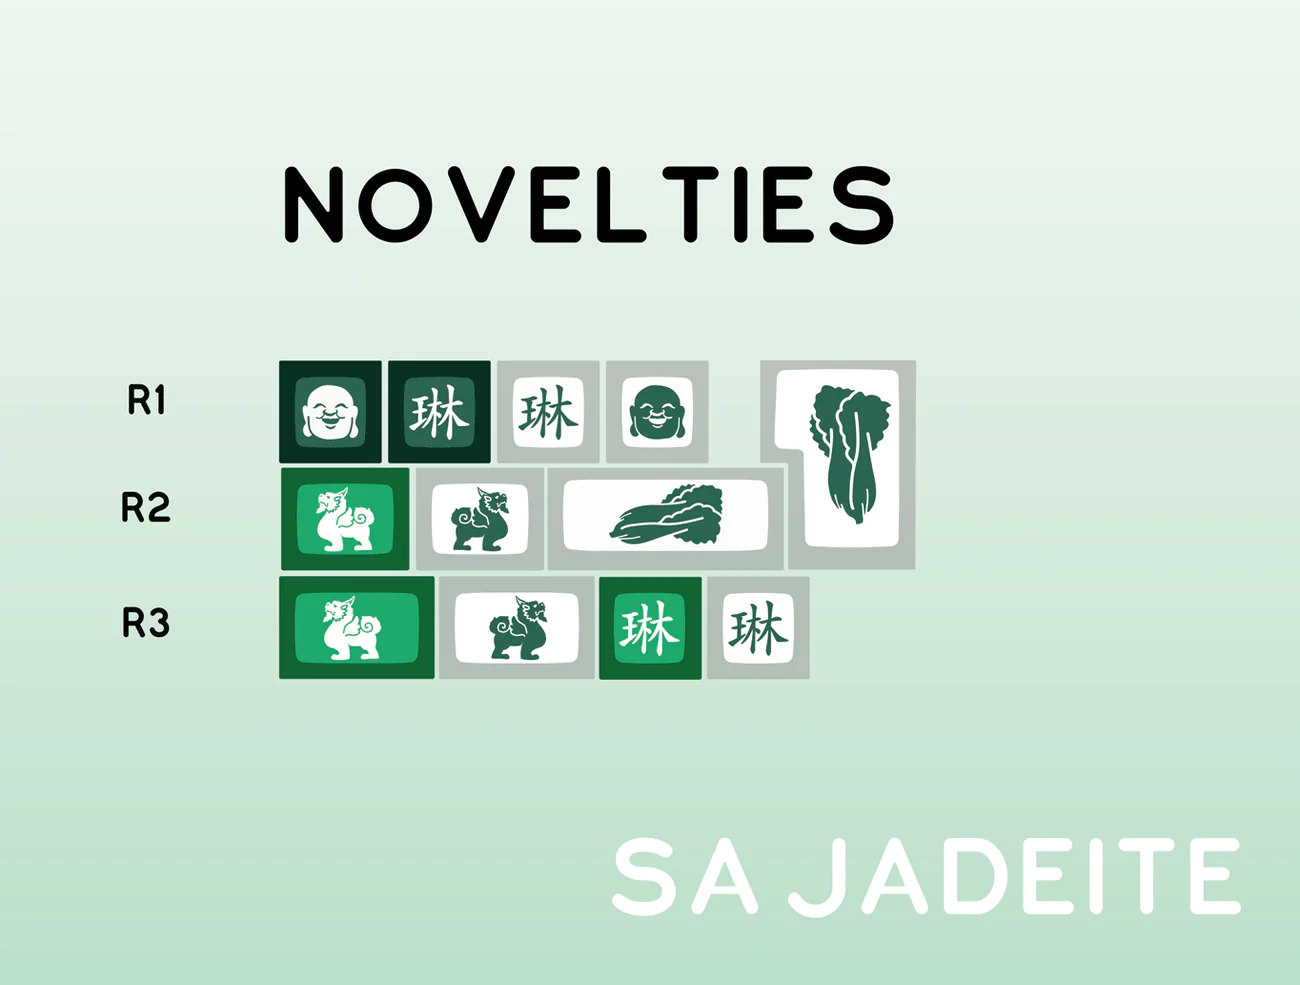 SA Jadeite - Novelties